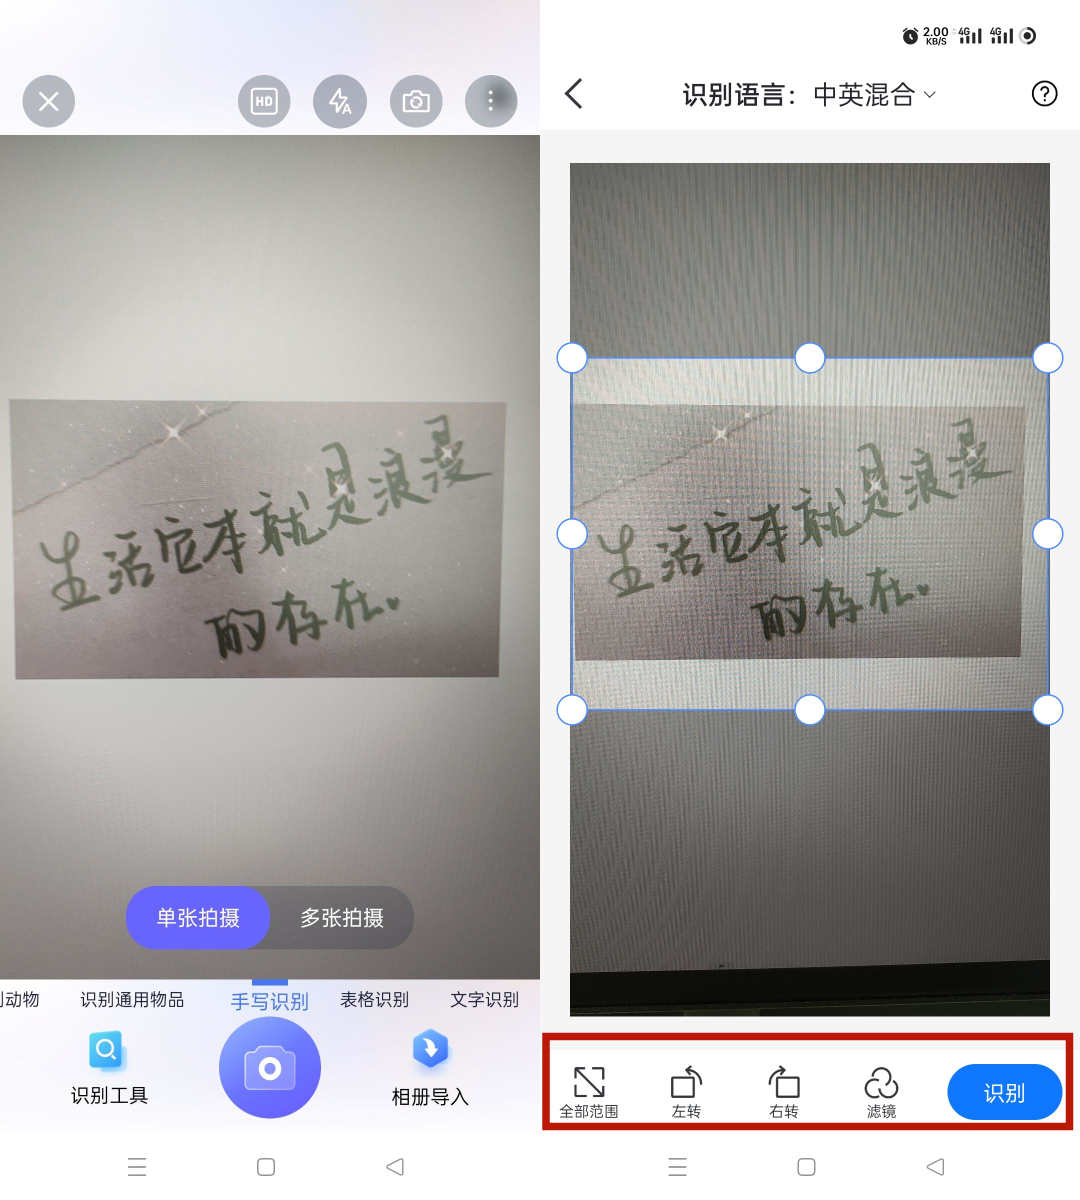 韩语翻译器语音转换器下载,韩语翻译器语音转换器app手机版下载 v1.07 - 浏览器家园